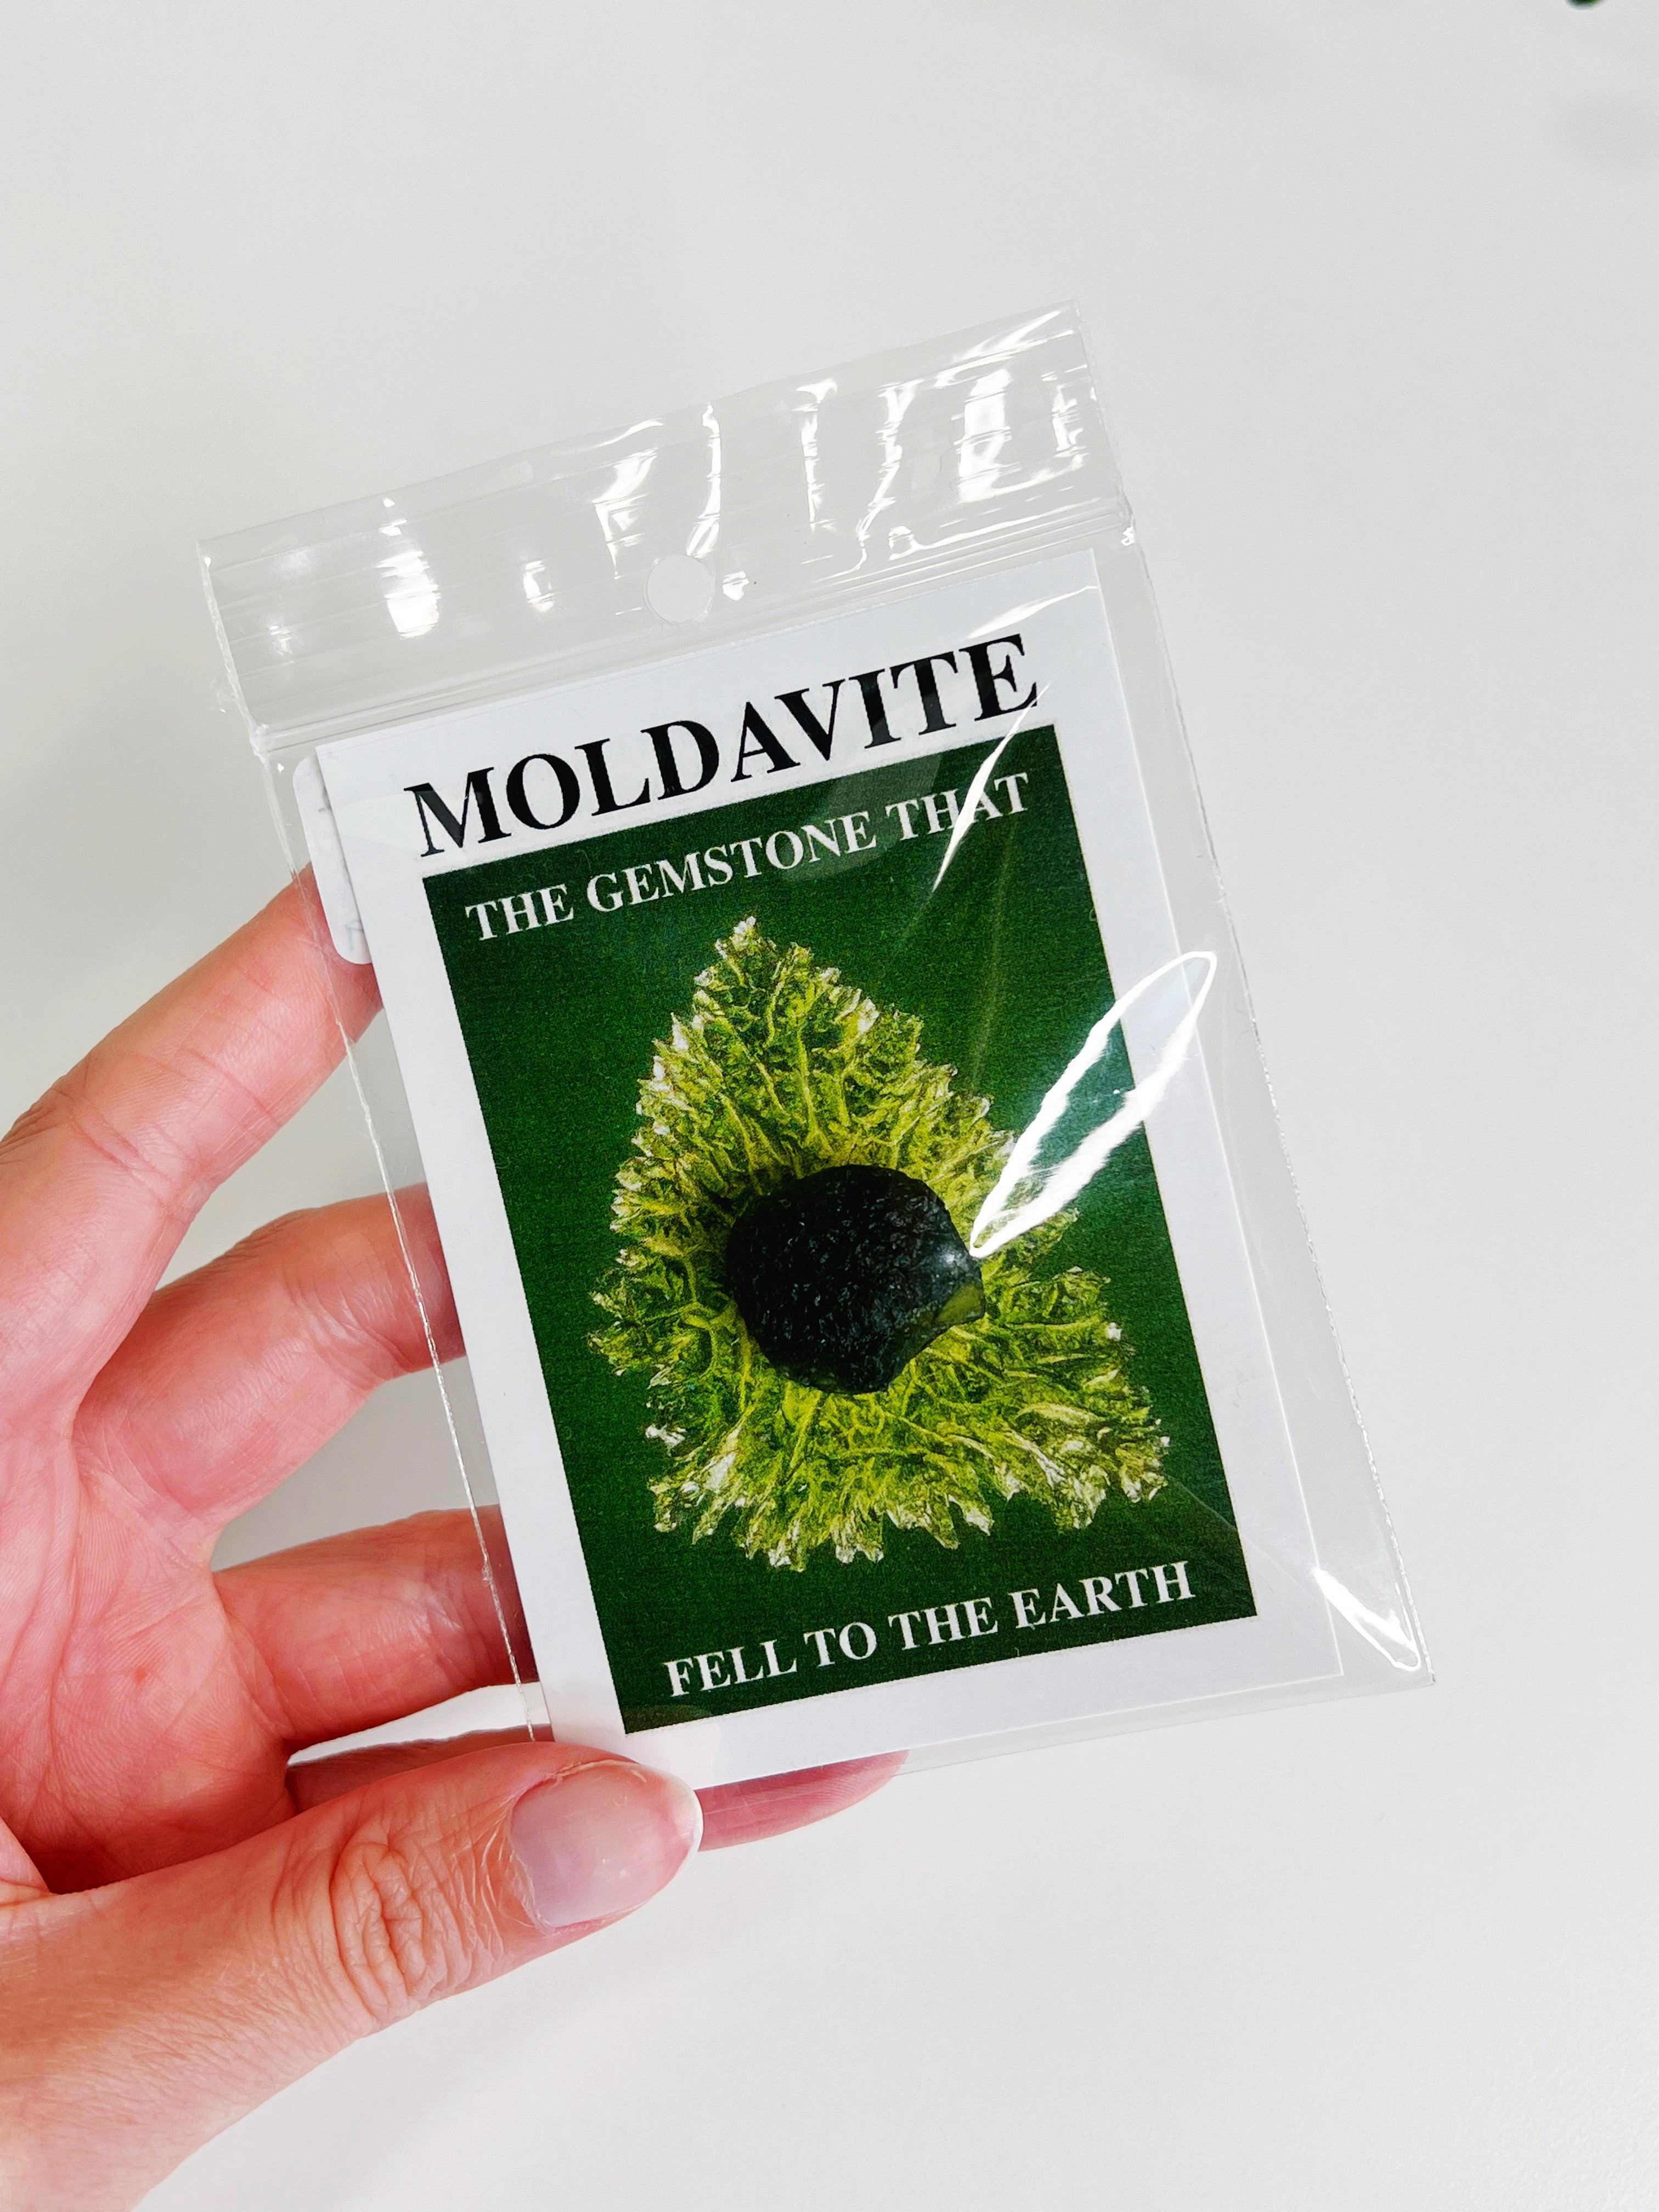 MOLDAVITE 5 - moldavite, tektite - The Mineral Maven